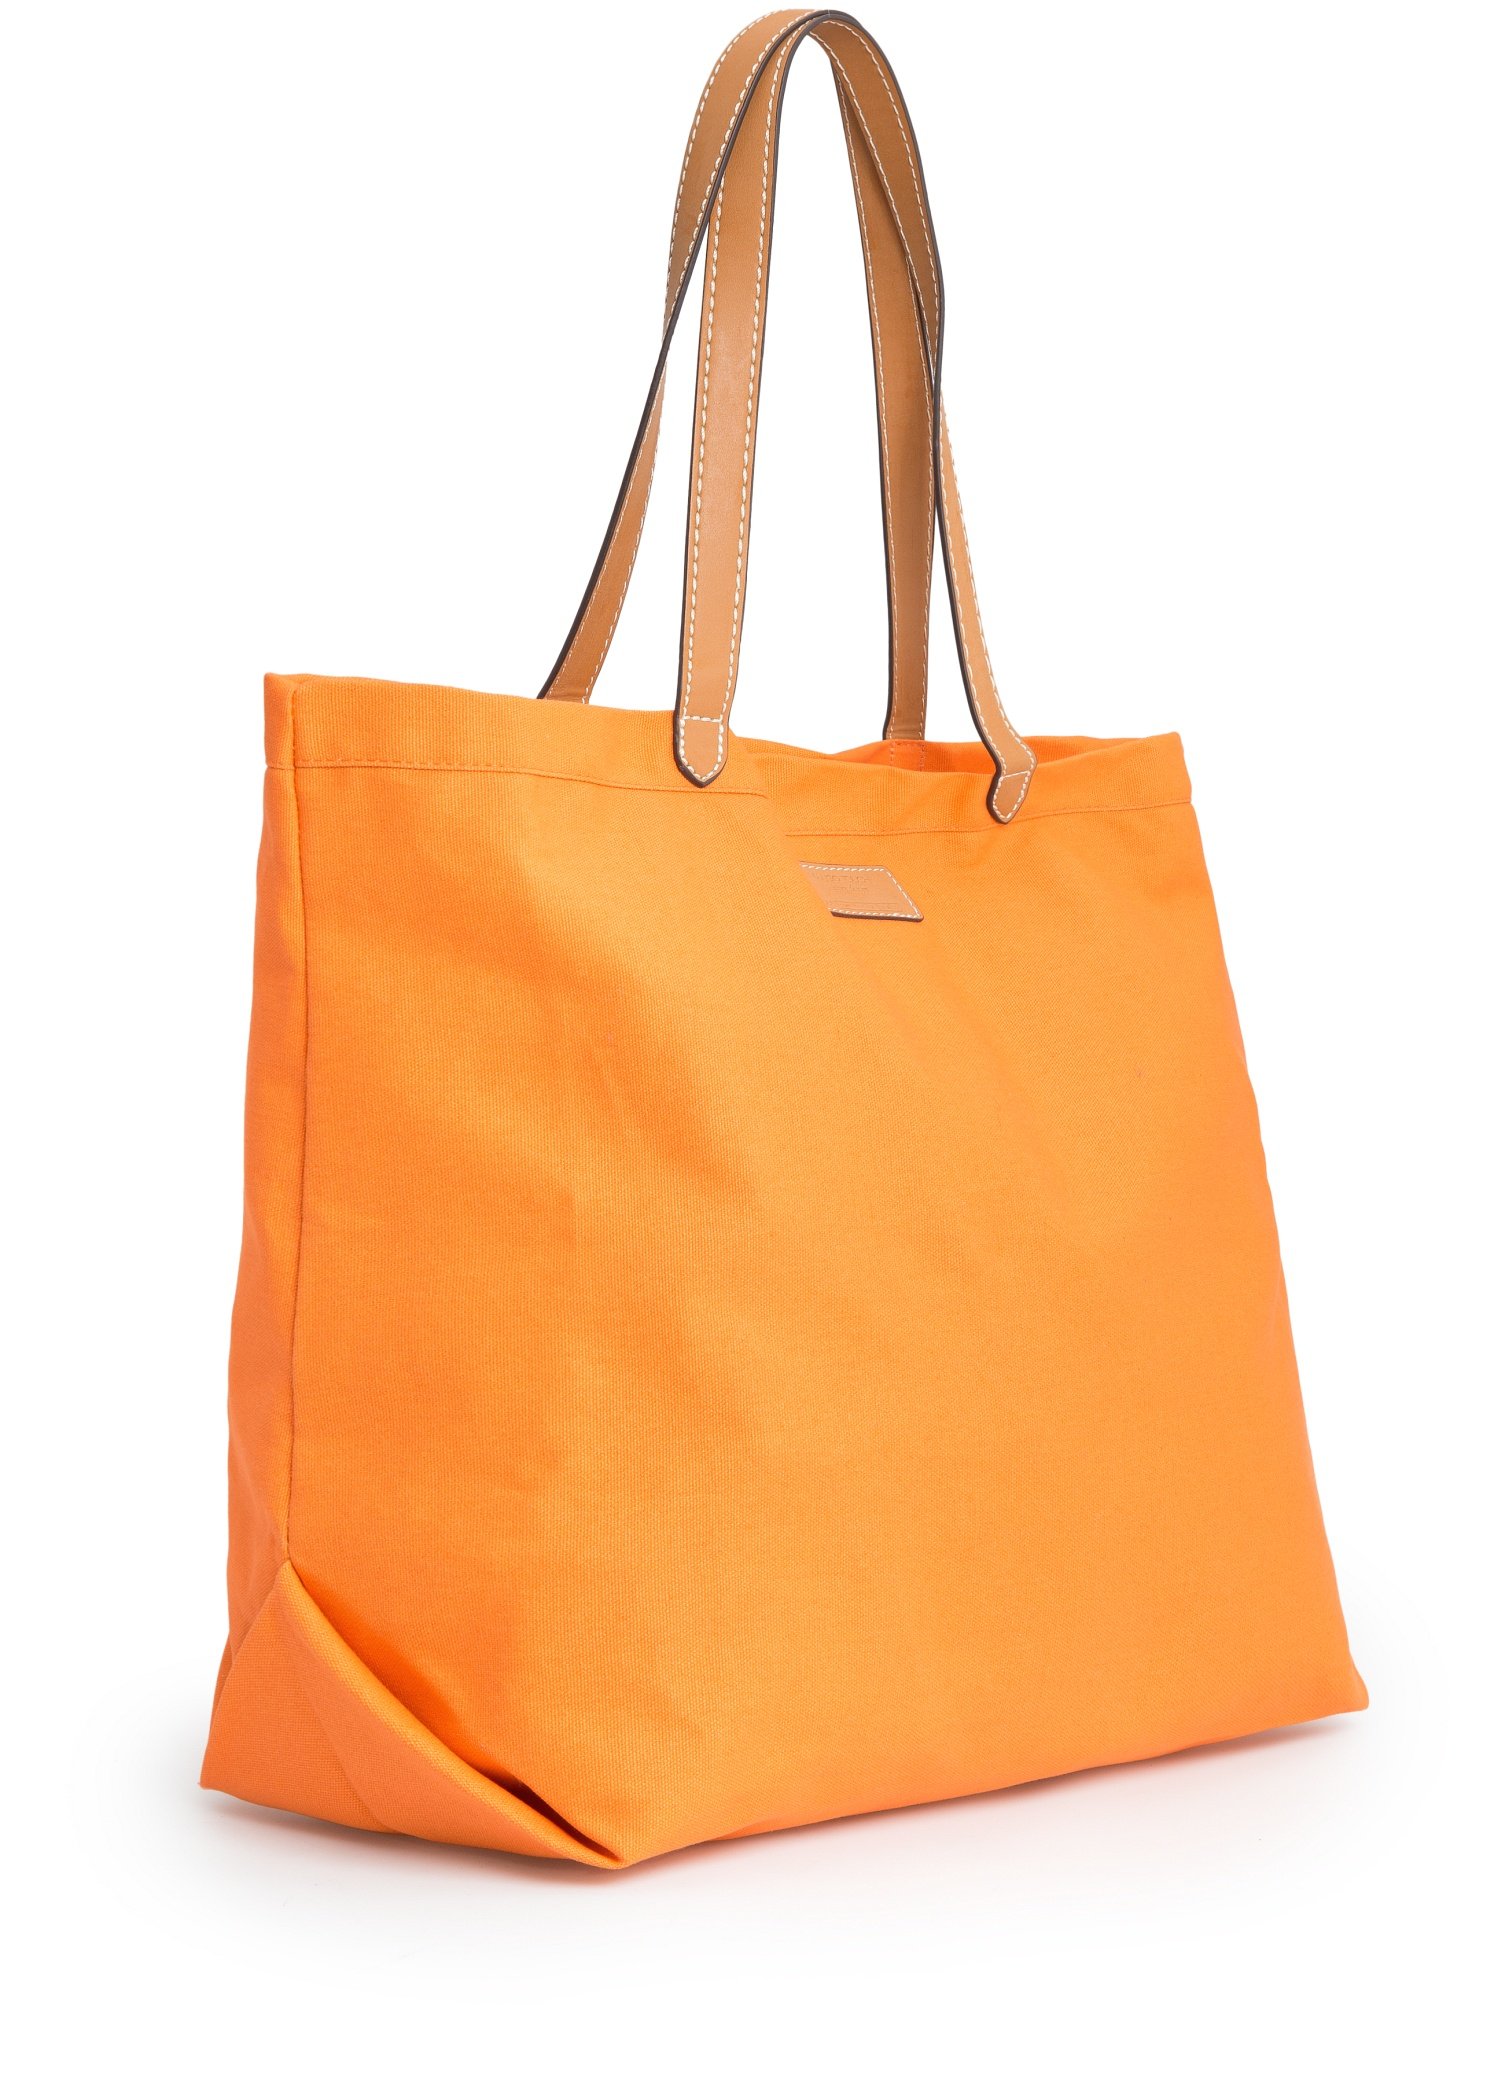 Mango Canvas Shopper Bag in Orange - Lyst